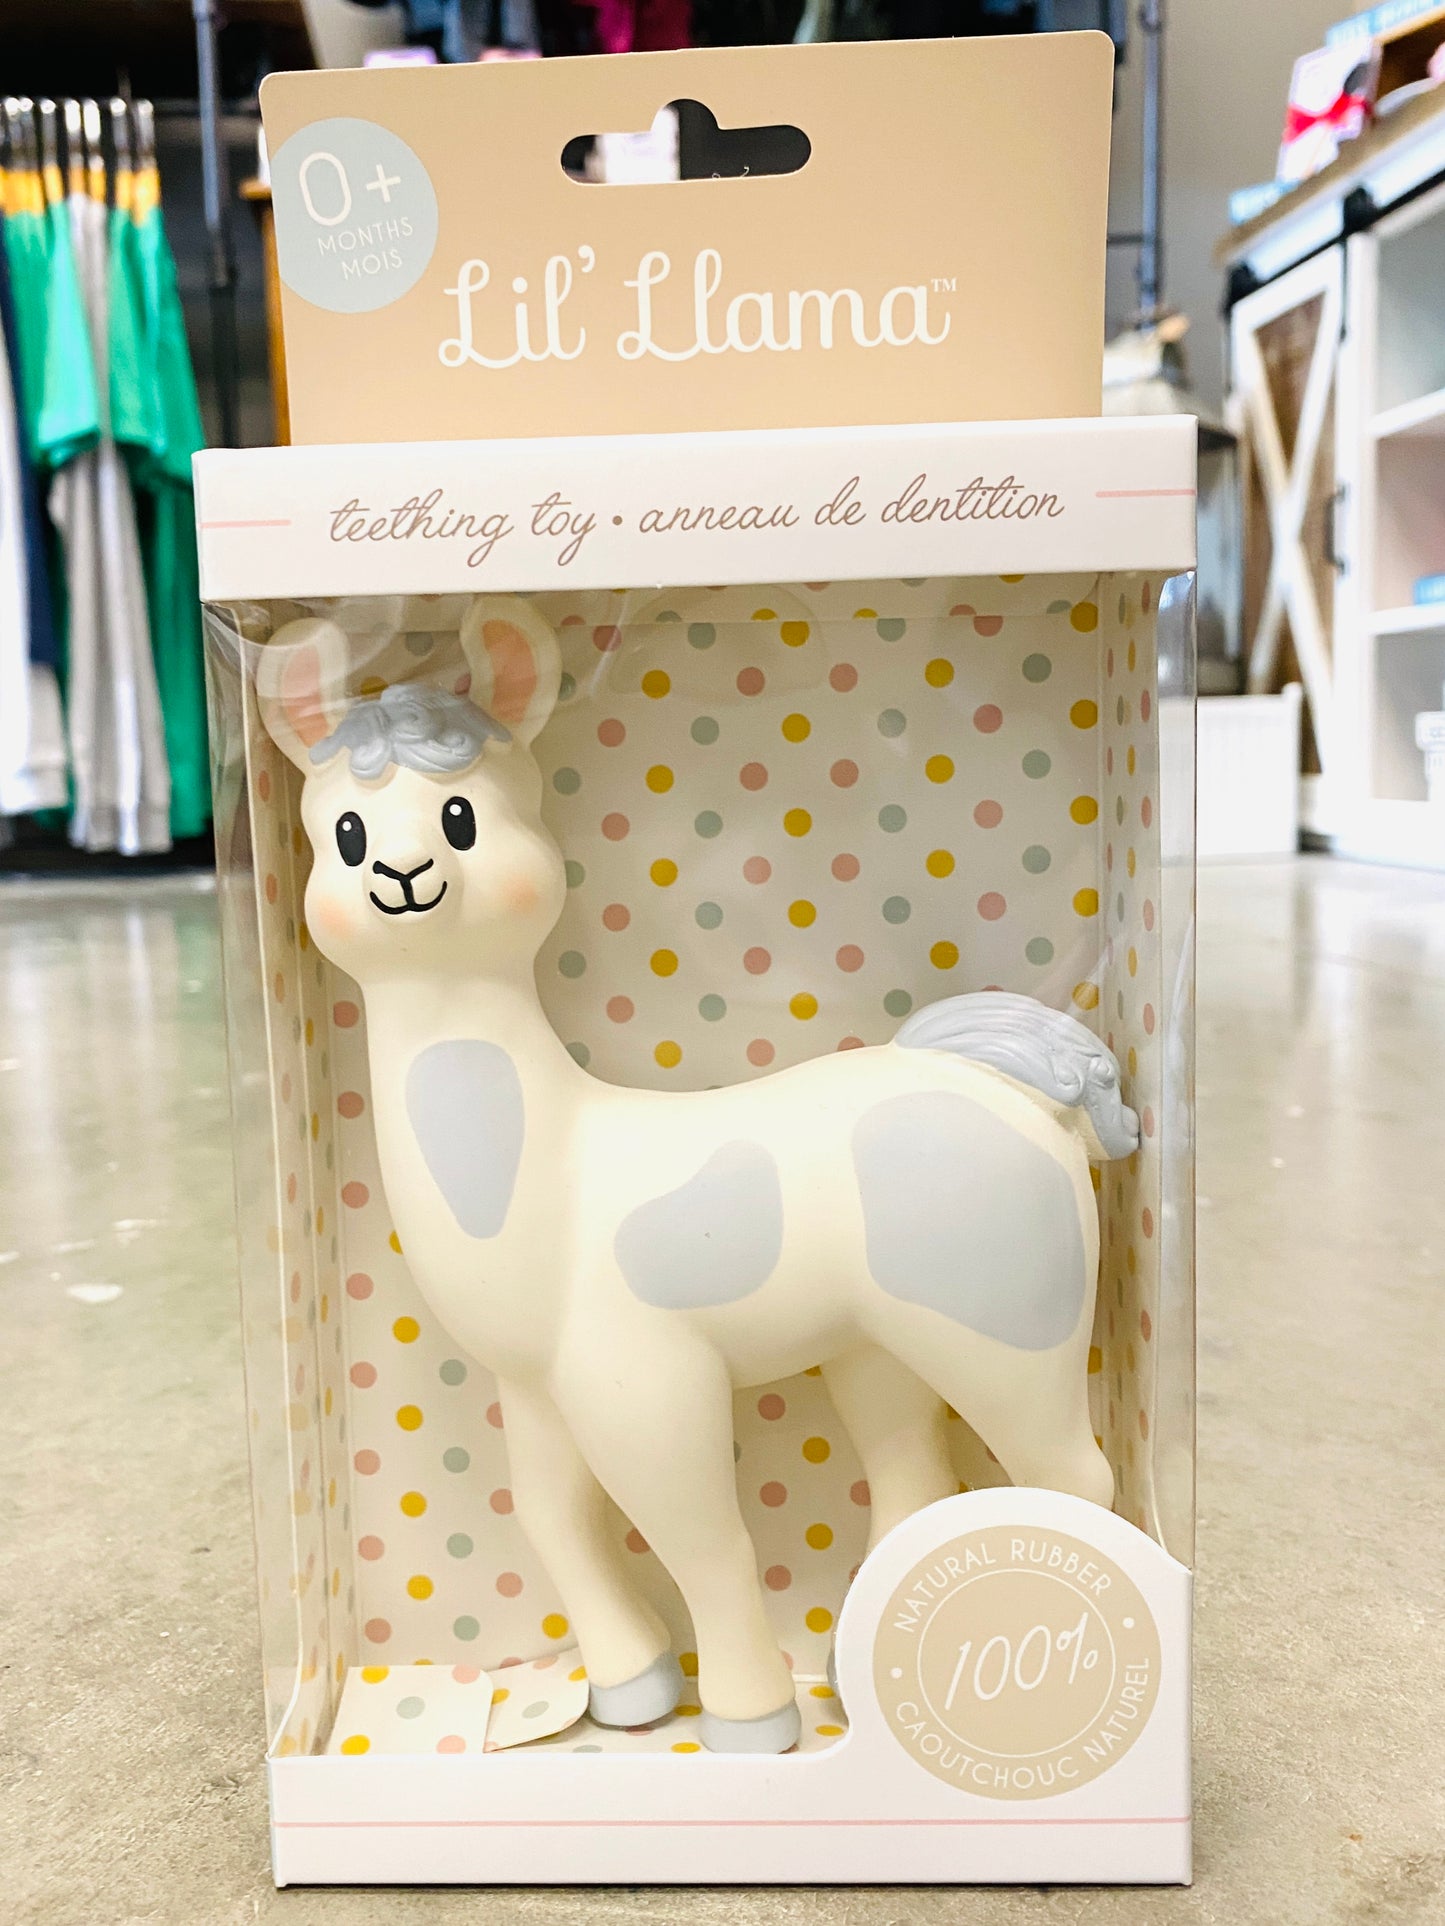 Lil Llama Teether